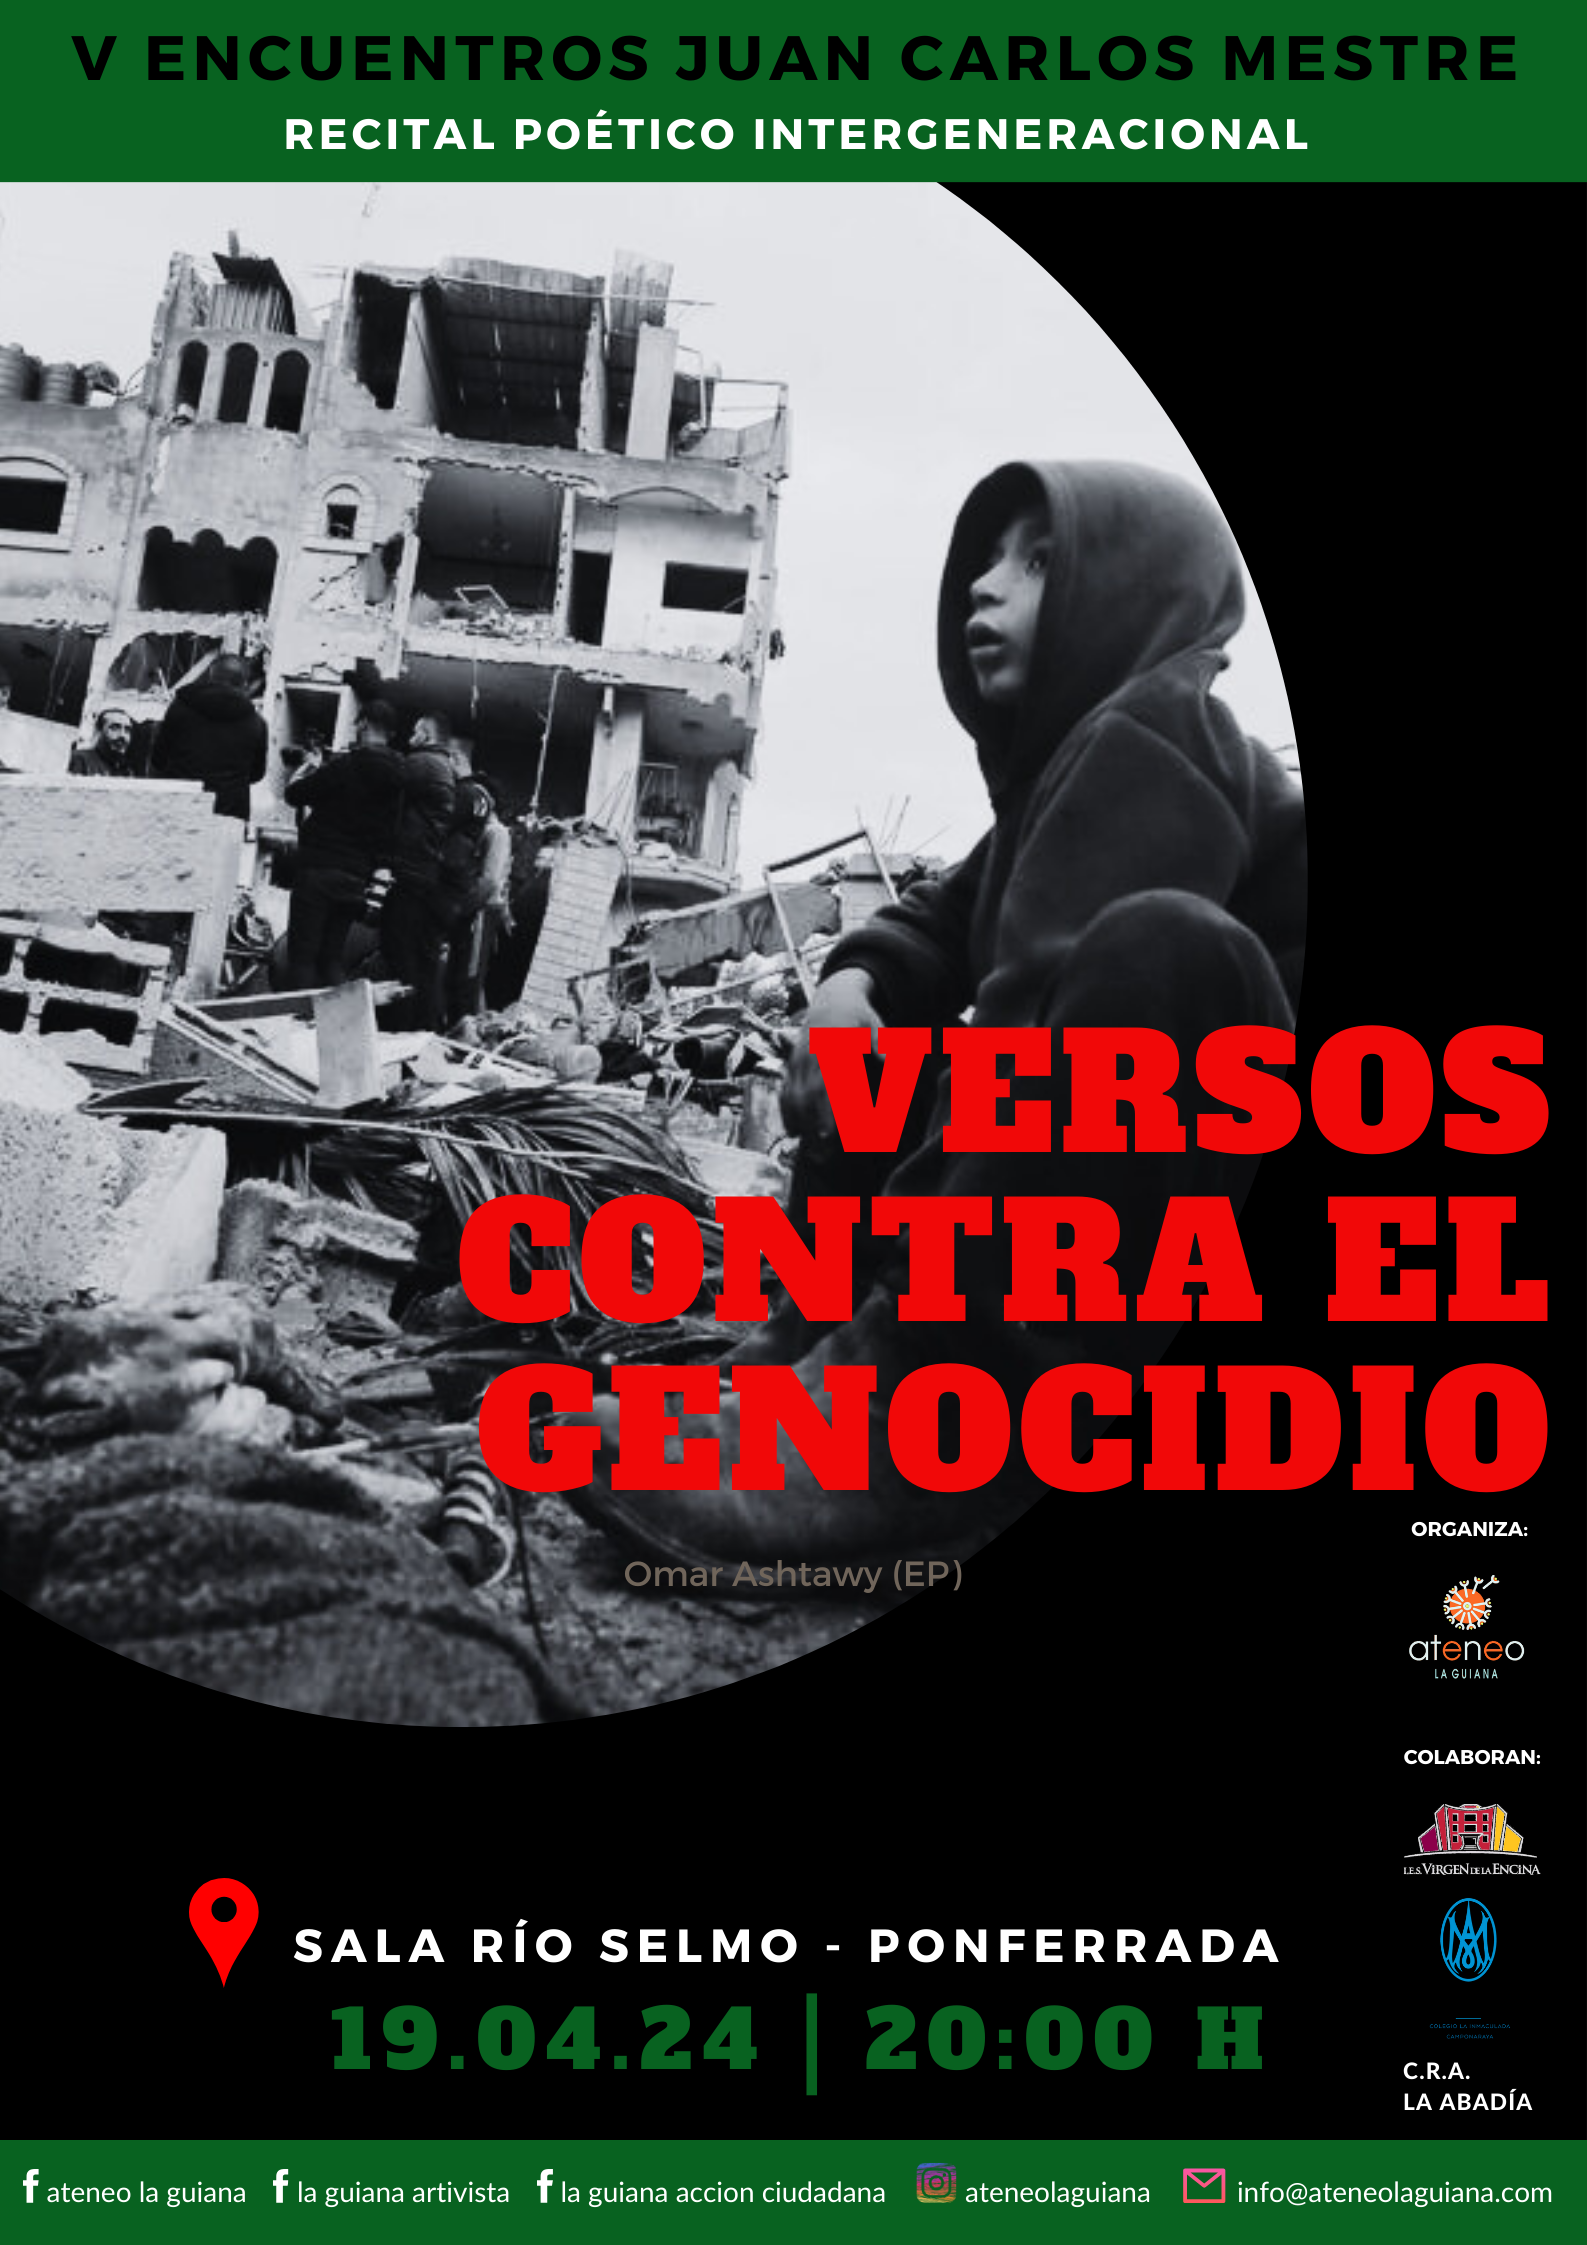 Cartel promocional de los V Encuentros Juan Carlos Mestre.